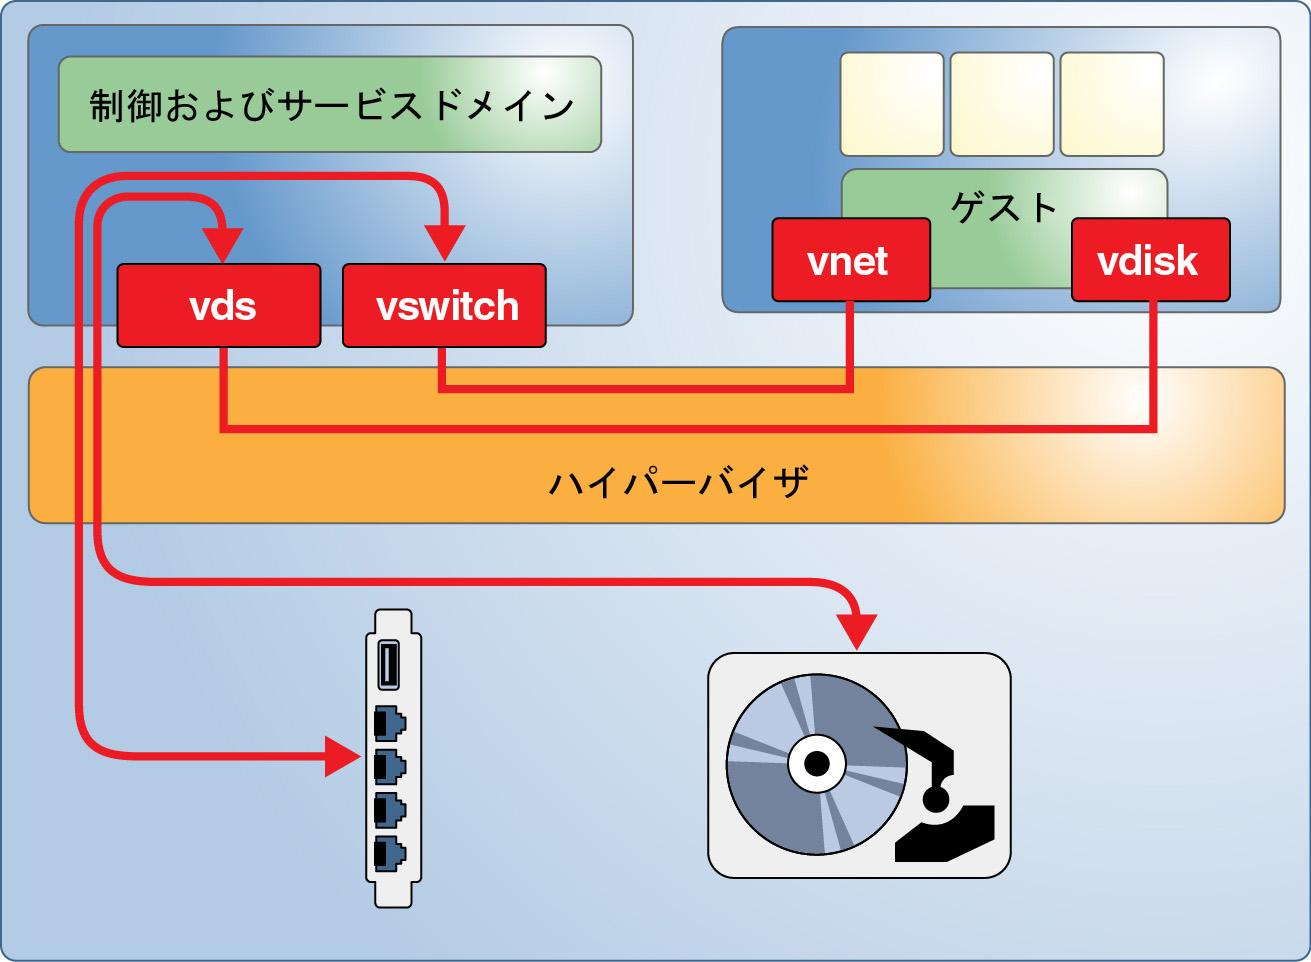 image:図は、制御ドメインがゲストドメインにサービスやハードウェアリソースを提供している一般的な Oracle VM Server for SPARC 環境を示しています。